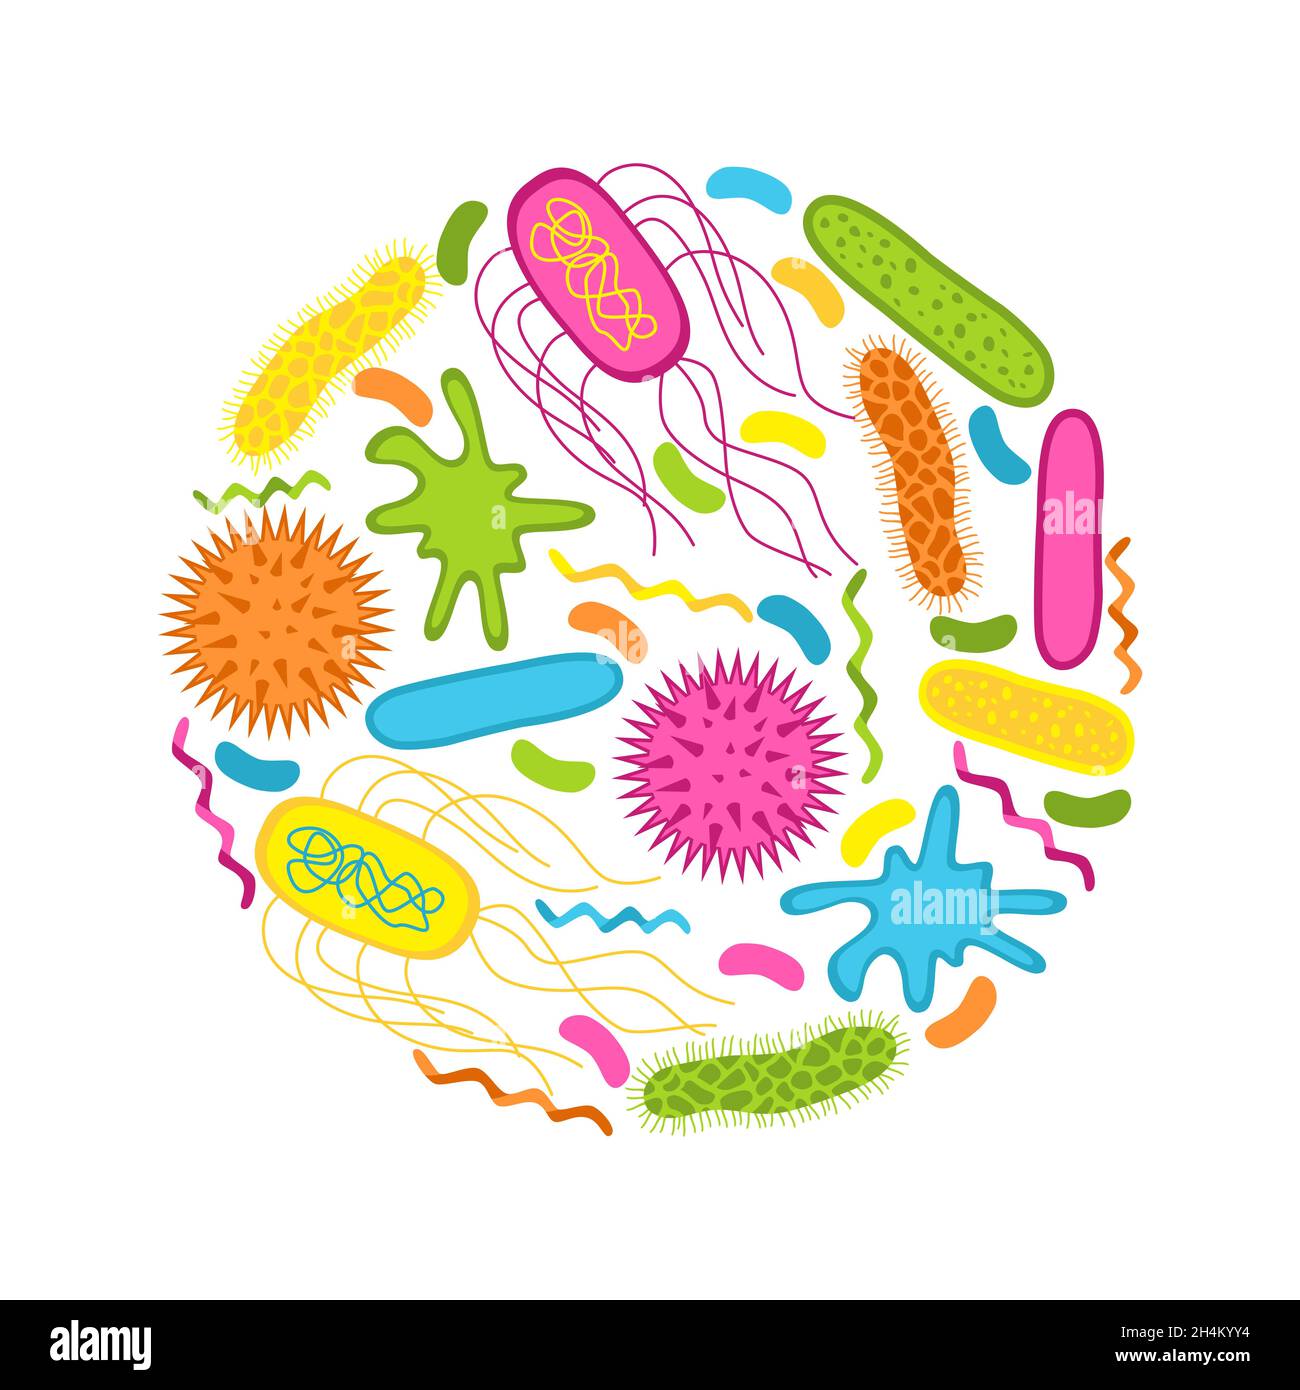 Viren und Bakterien auf weißem Hintergrund isoliert. Form der Bakterienzelle: cocci, Bazillen, Spirilla. Vektorgrafik im flachen Stil. Stock Vektor